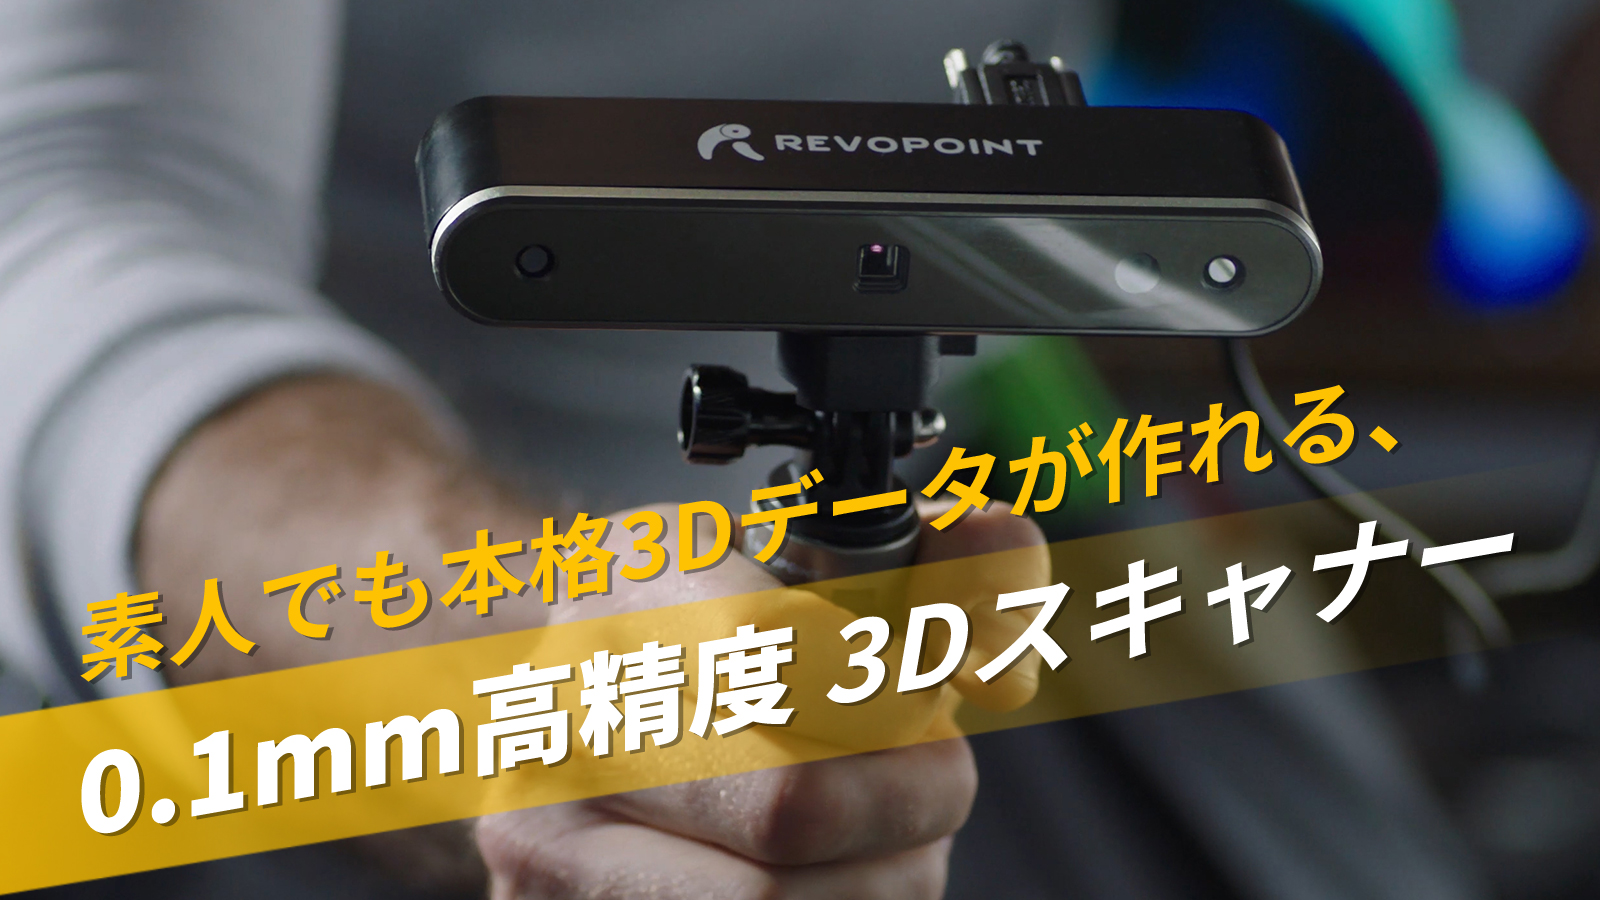 Revopoint POP 2】素人でも本格的な3Dモデルが簡単に作れる0.1mm高精度 